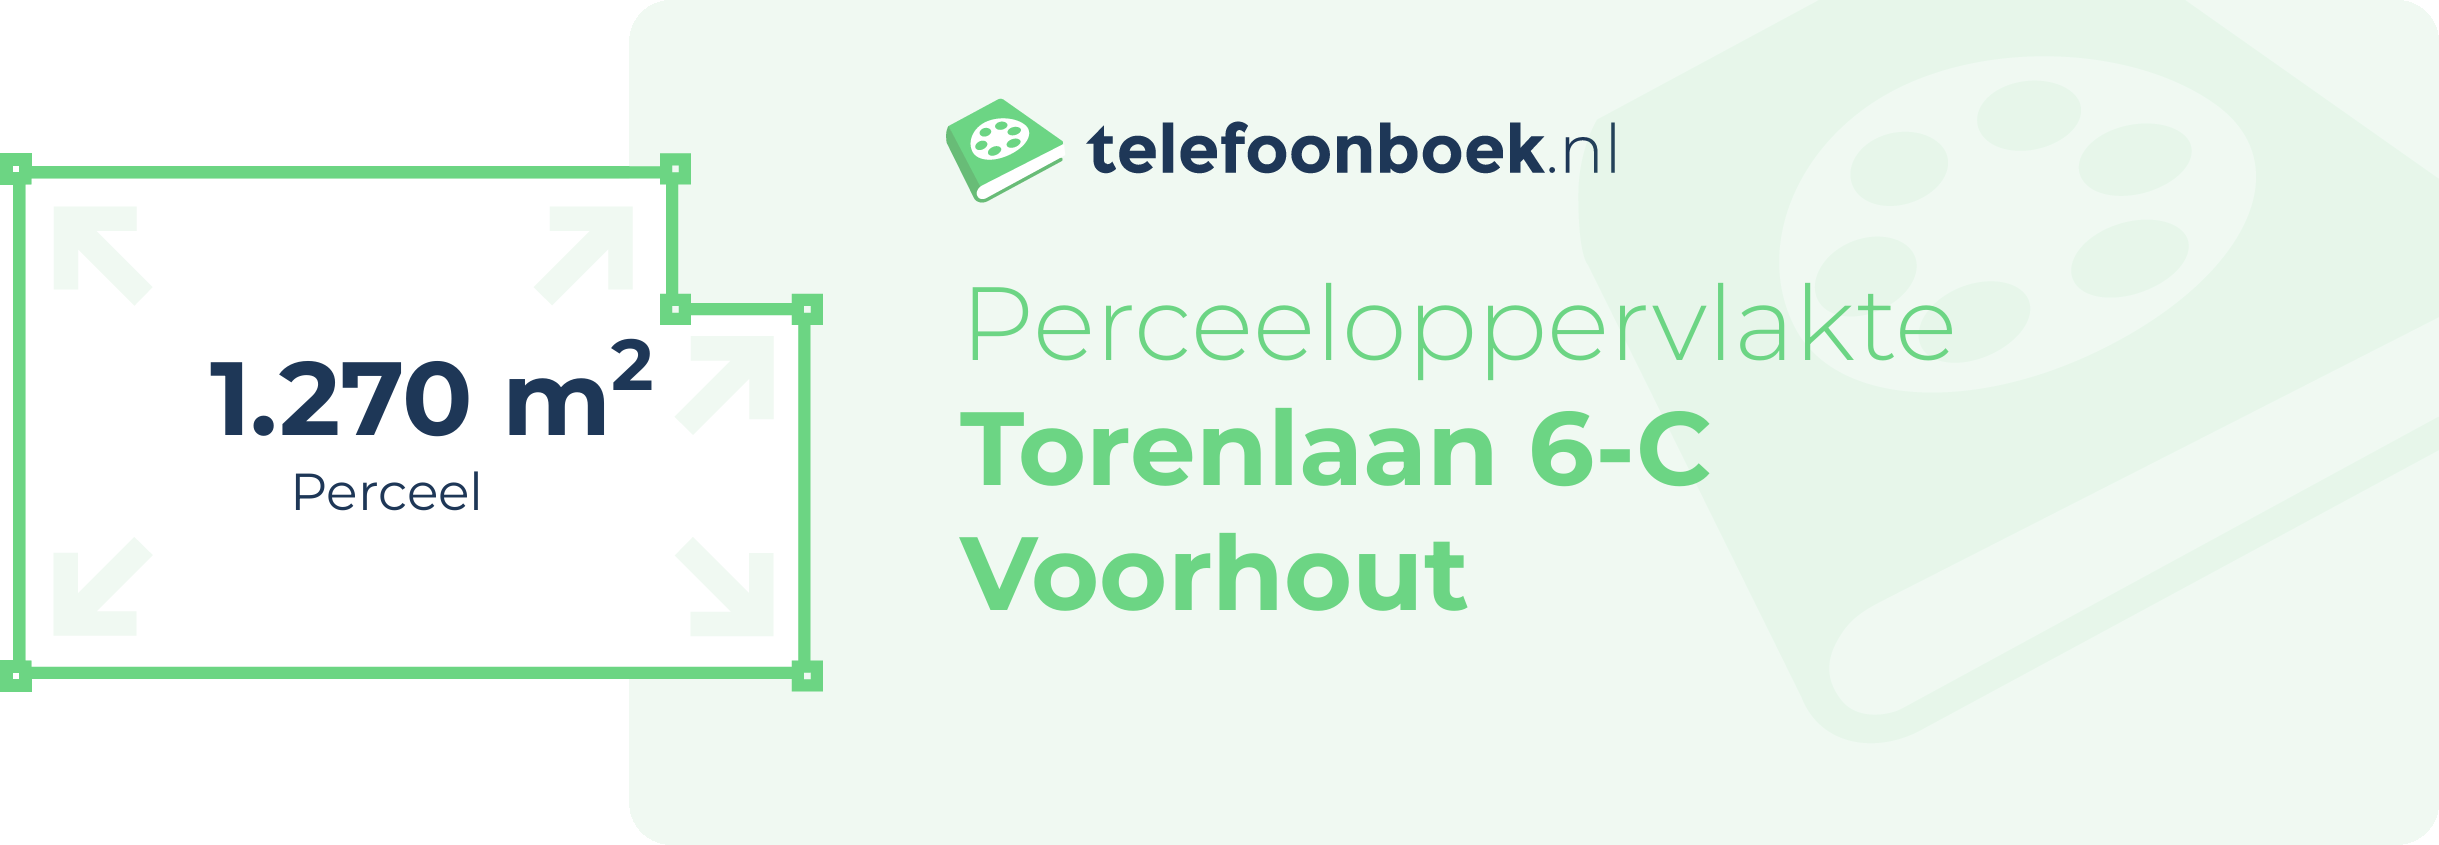 Perceeloppervlakte Torenlaan 6-C Voorhout